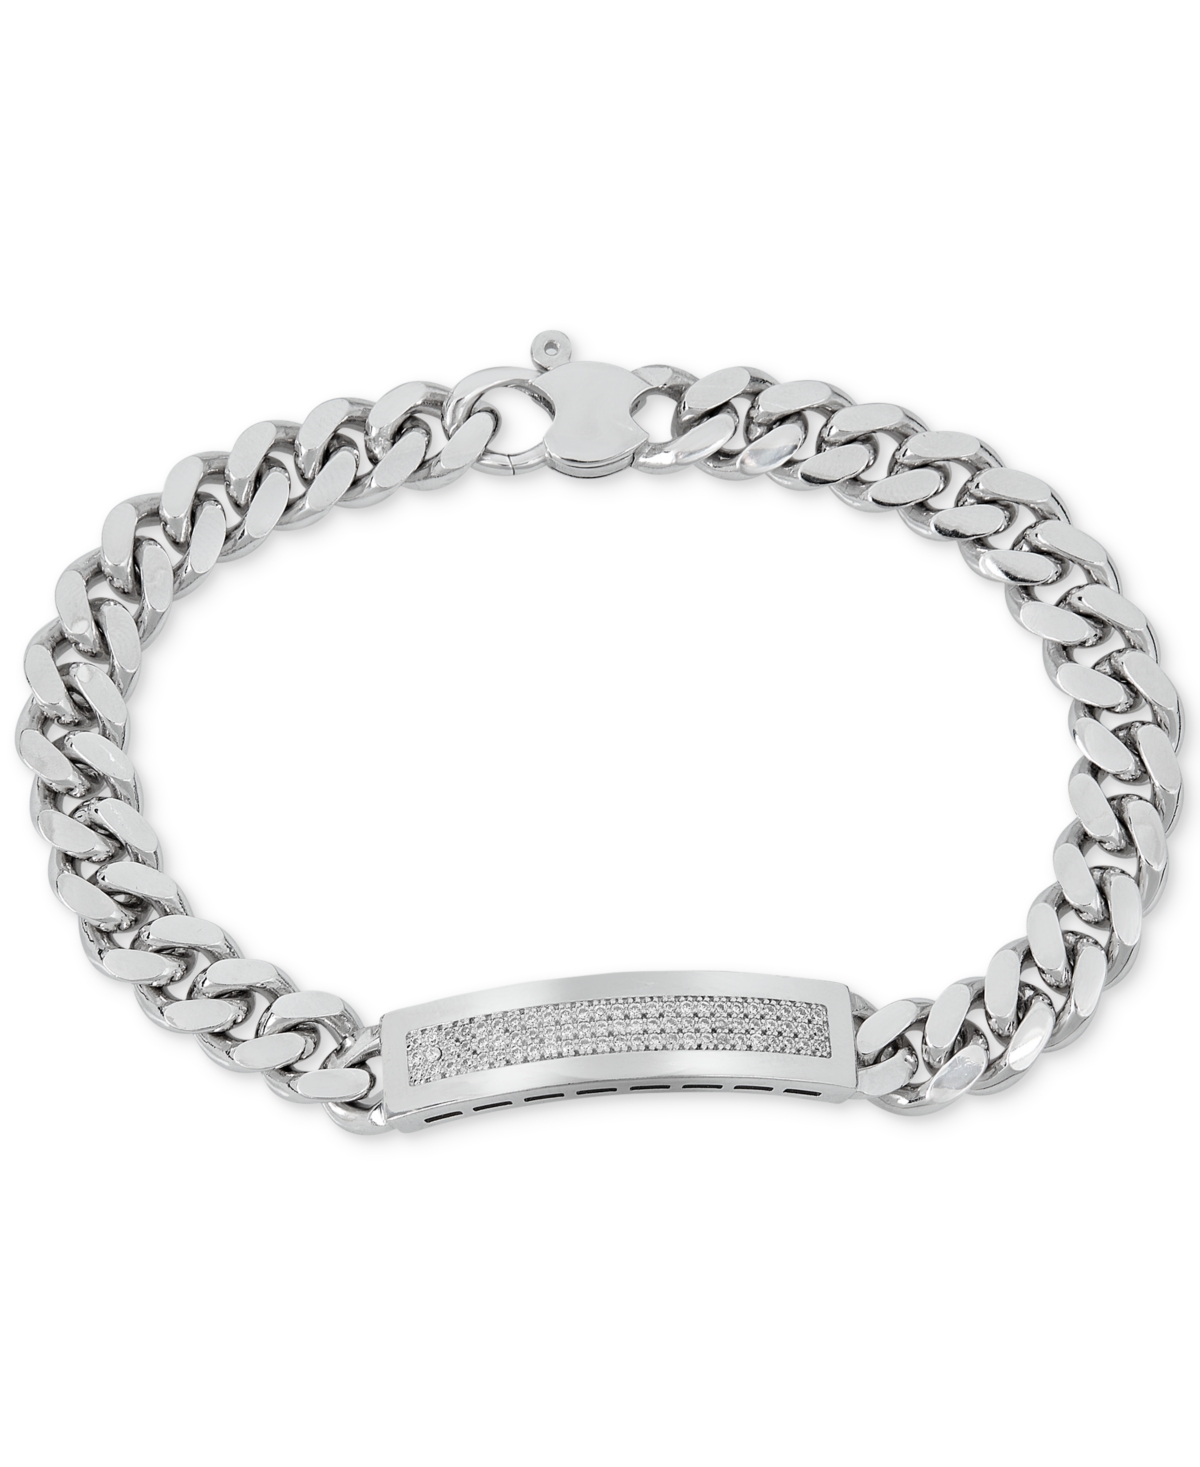 Men's Diamond (1/2 ct. t.w.) Id Bracelet in Sterling Silver (Also in 14k Gold Over Silver) - Gold Over Silver